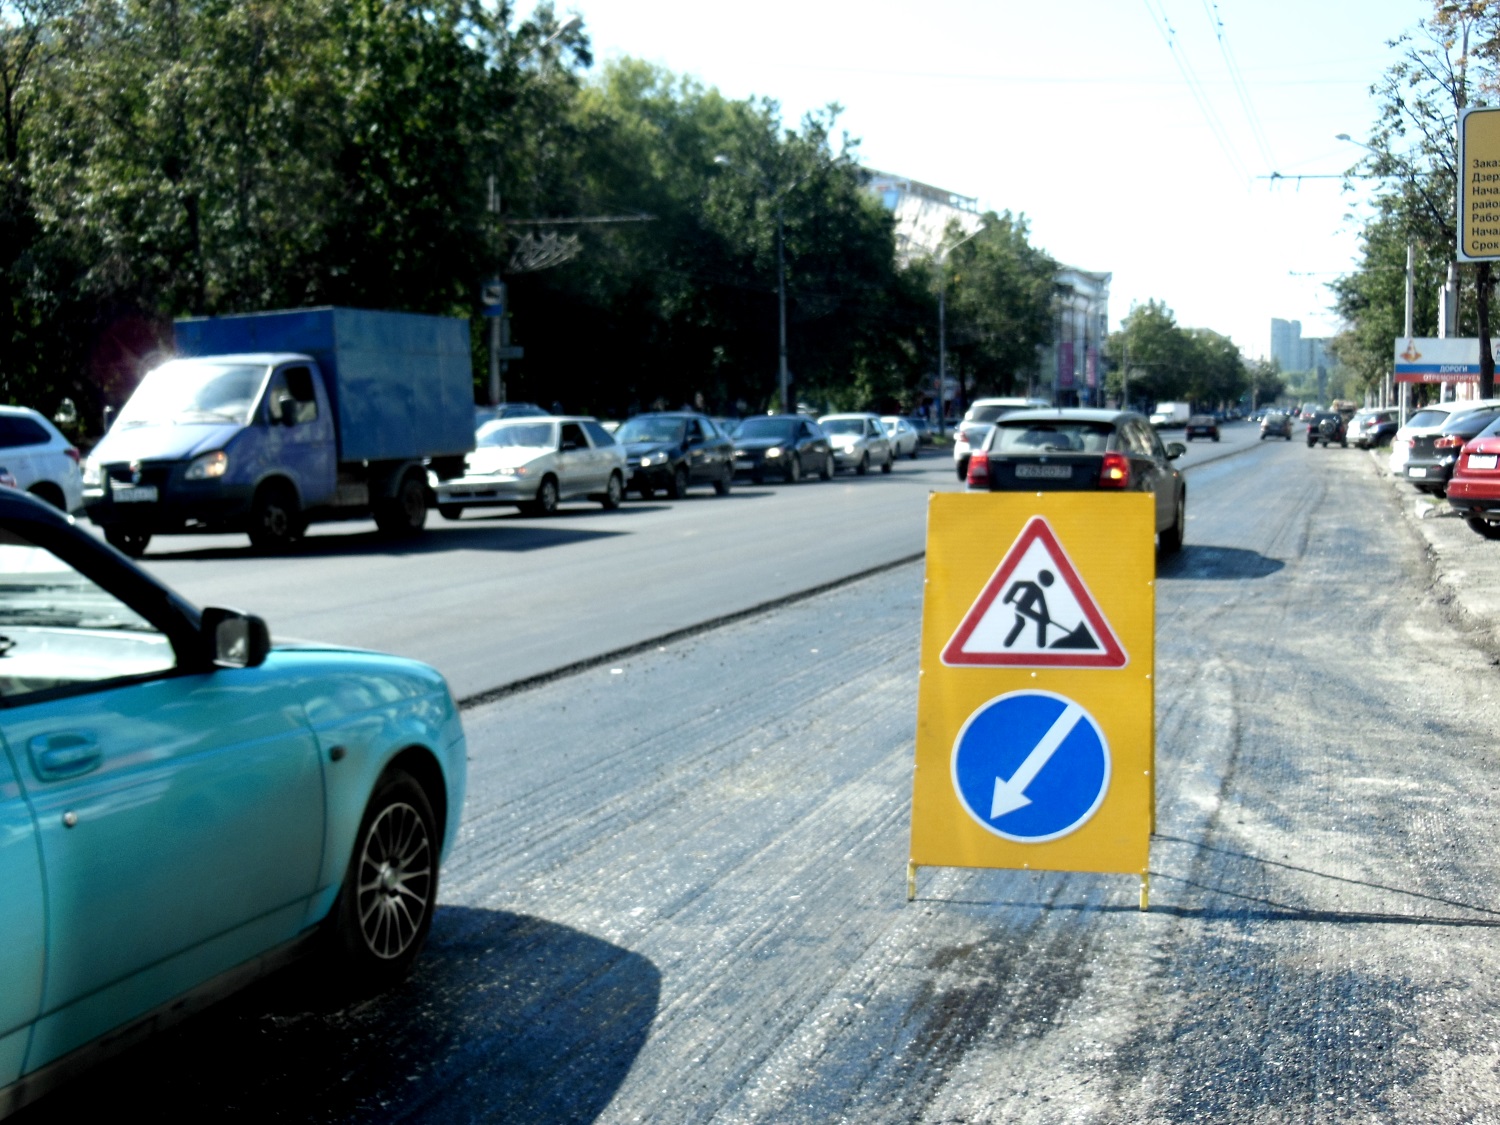 22 тысячи кв. метров покрытия: в Перми завершен ремонт ул. Ленина